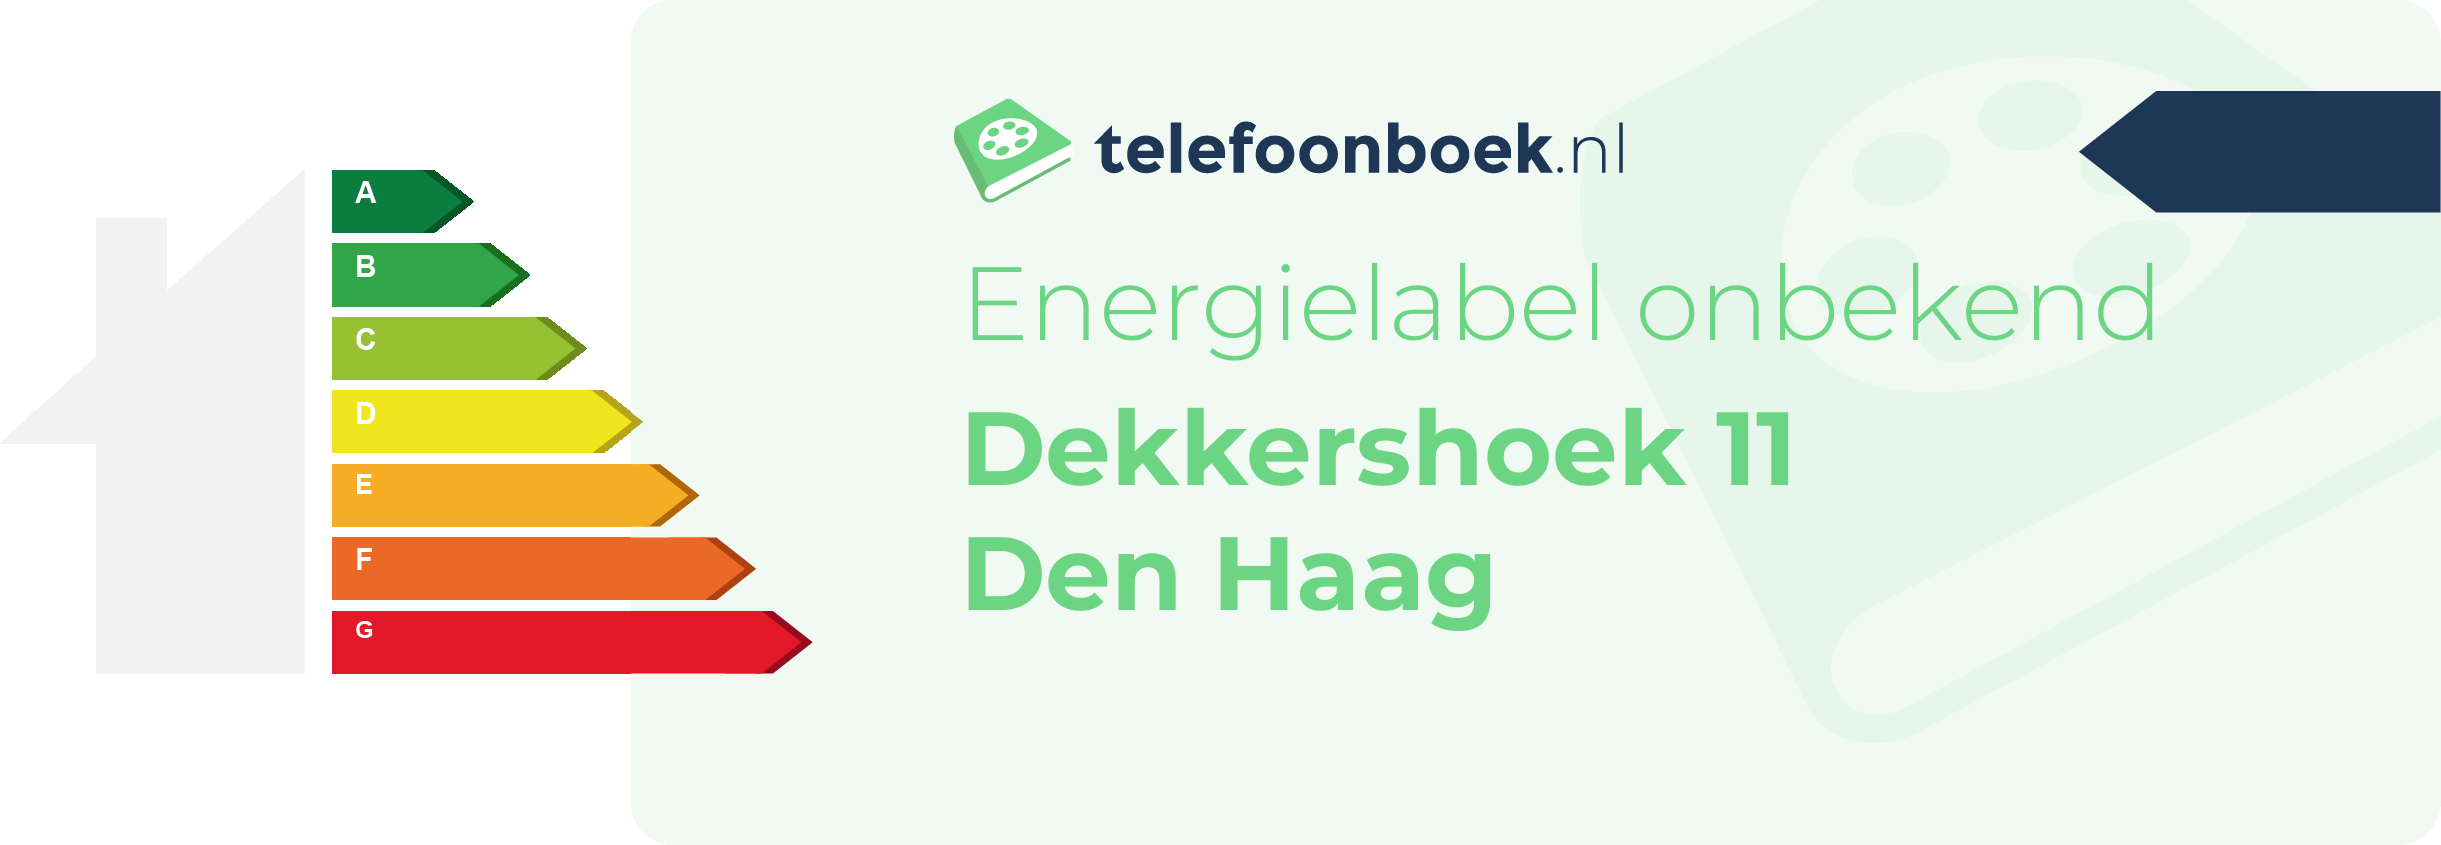 Energielabel Dekkershoek 11 Den Haag